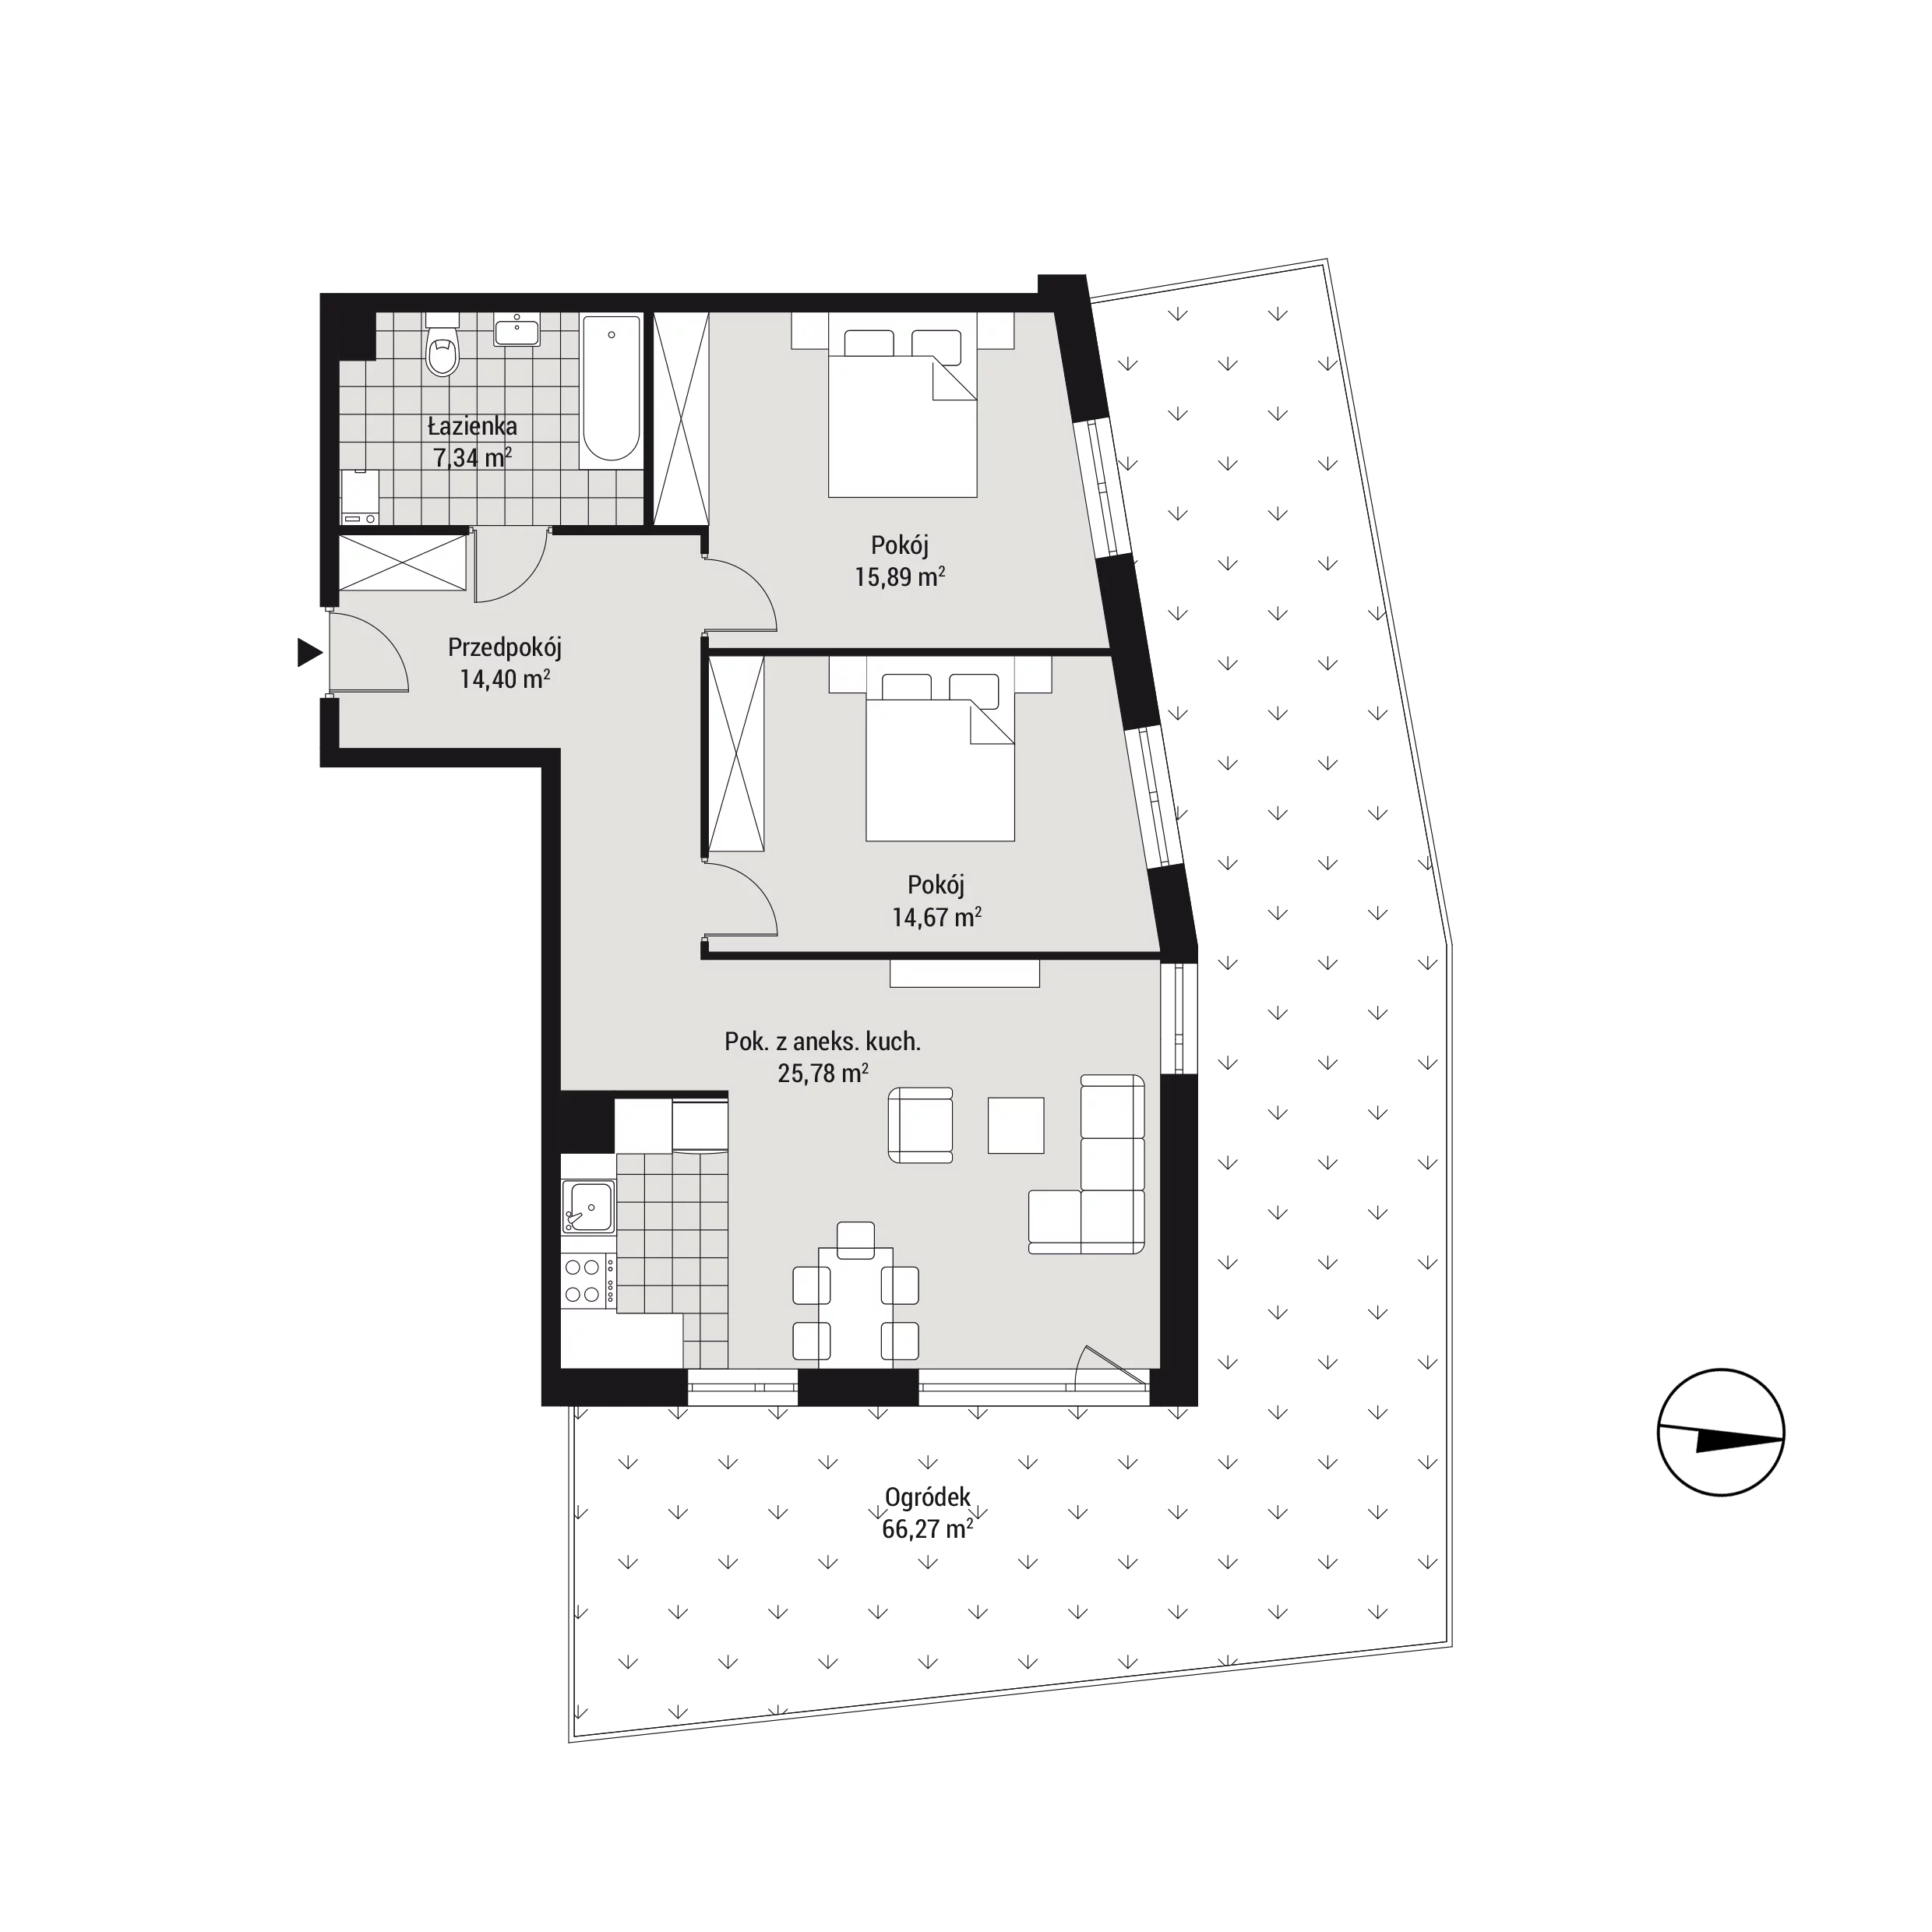 Mieszkanie 78,33 m², parter, oferta nr mieszkanie C08, Na Koszutce, Katowice, Śródmieście, Koszutka, ul. Słoneczna 1